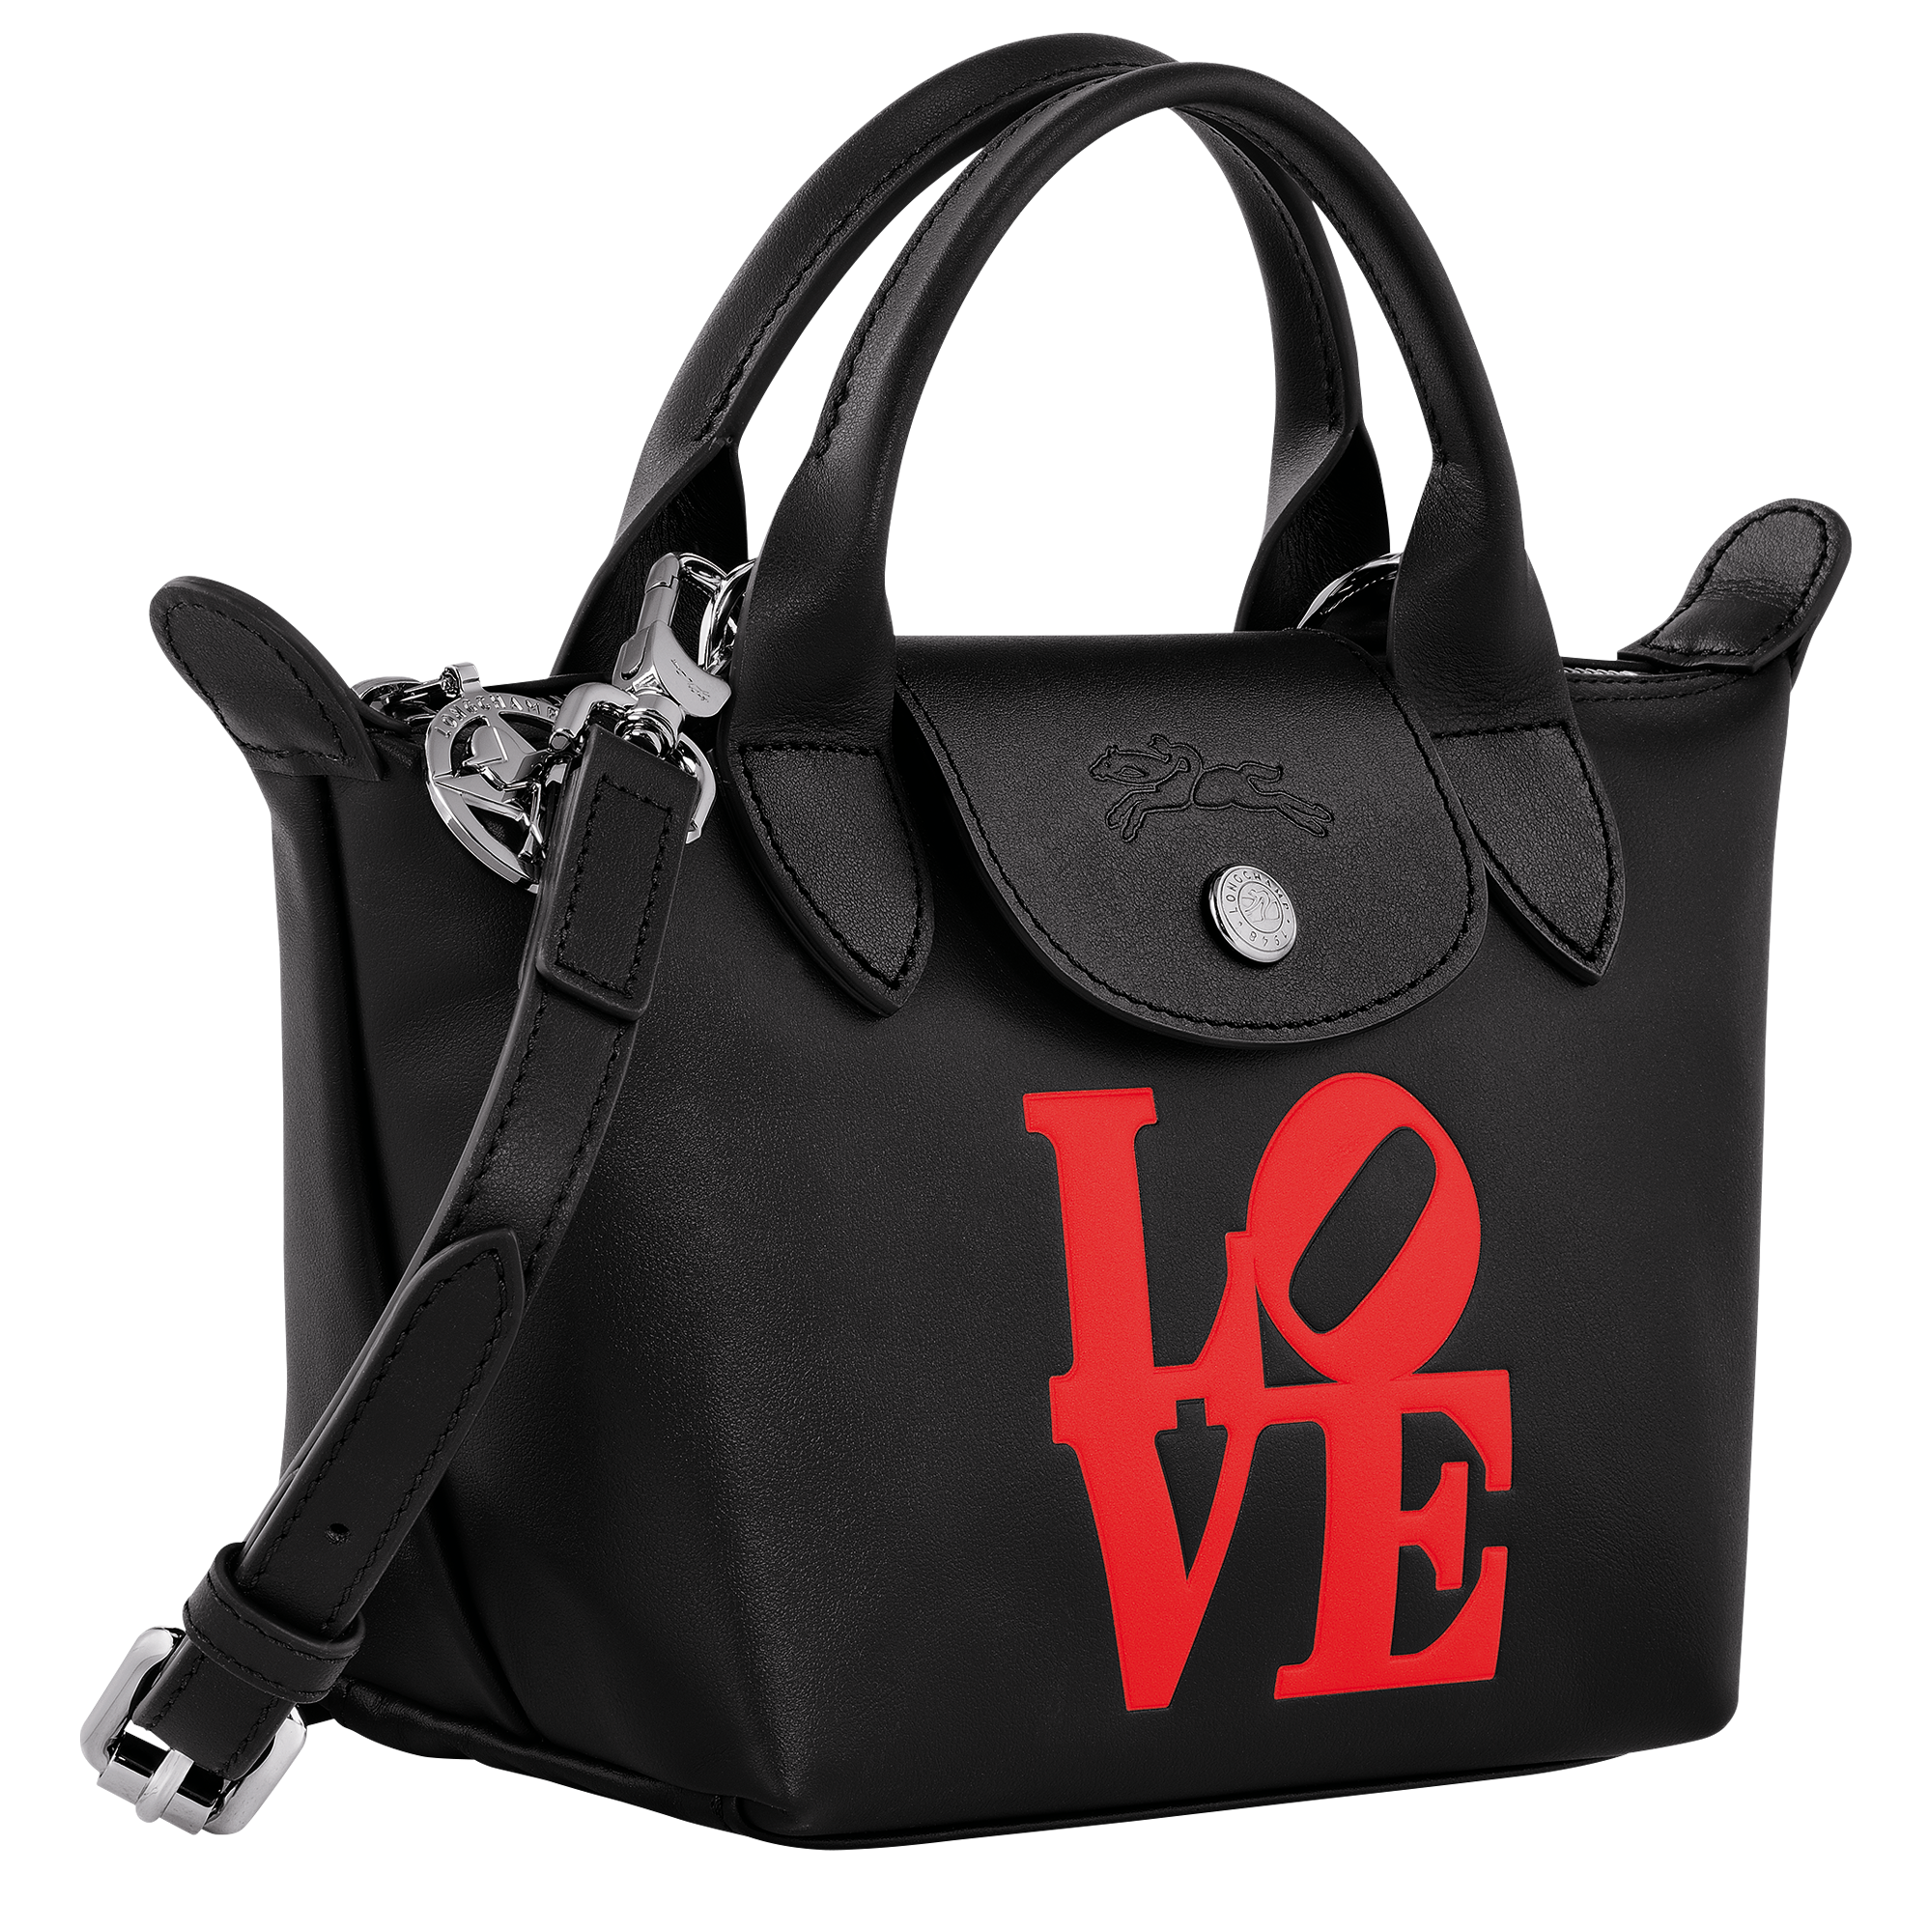 Longchamp x Robert Indiana Handbag XS, Black